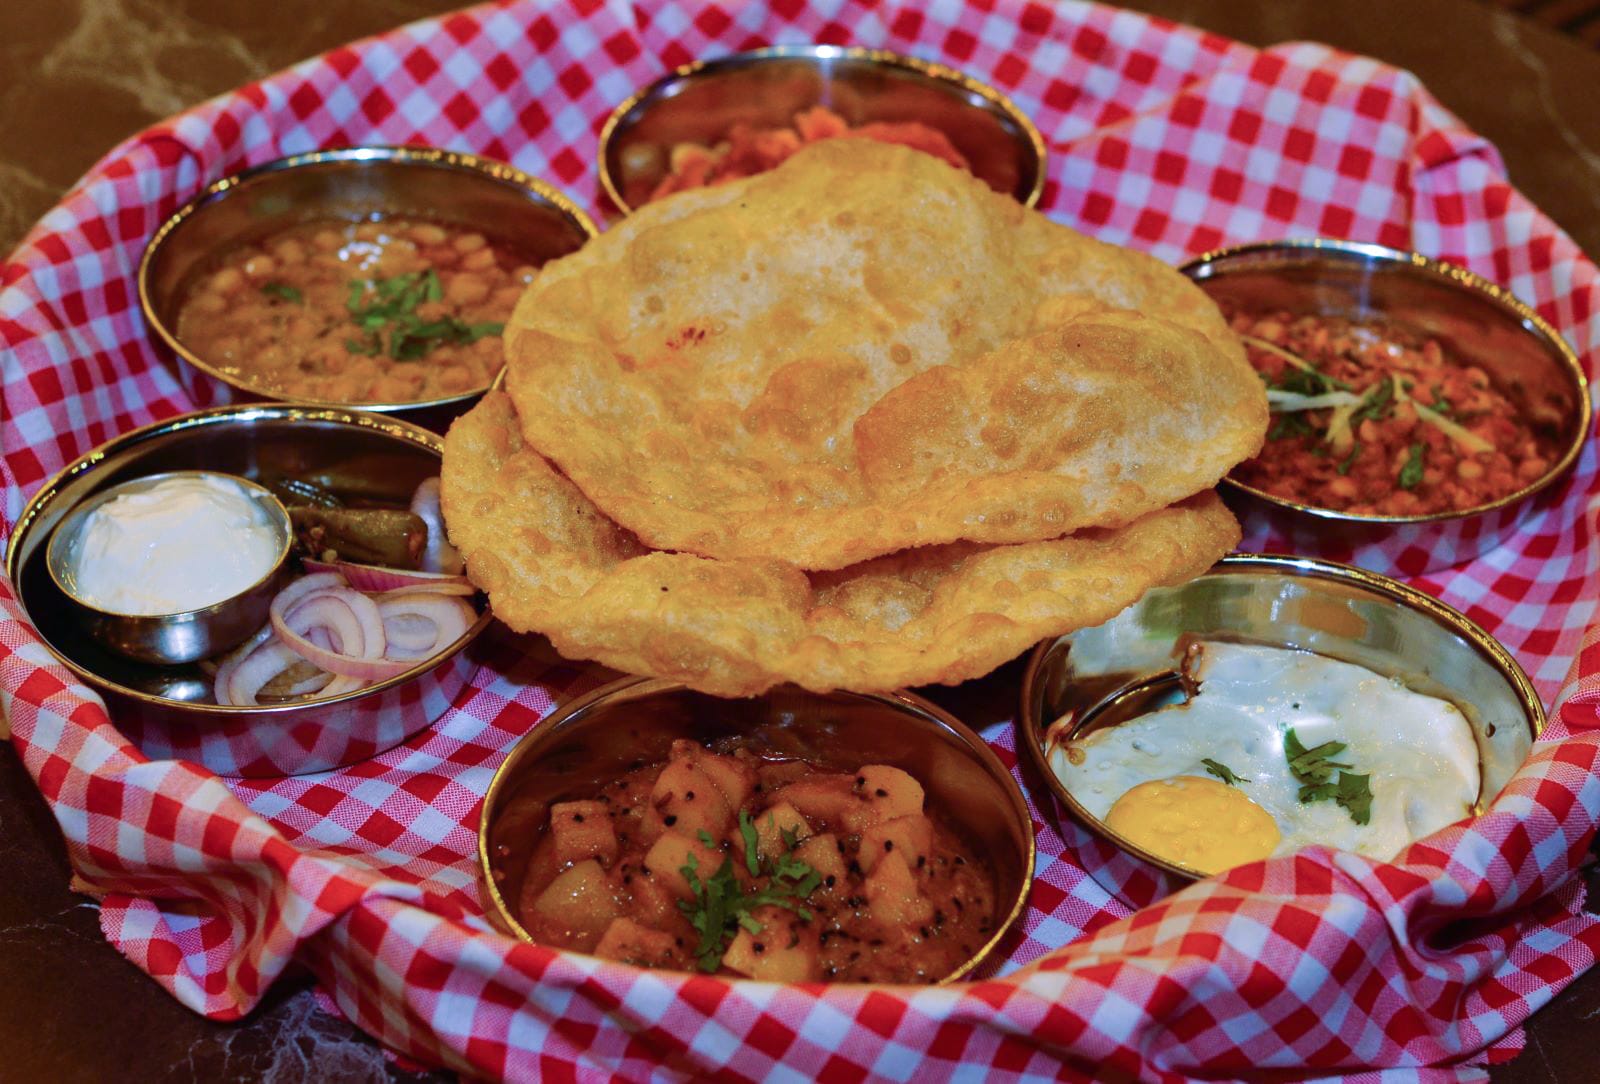 The Desi breakfast platter